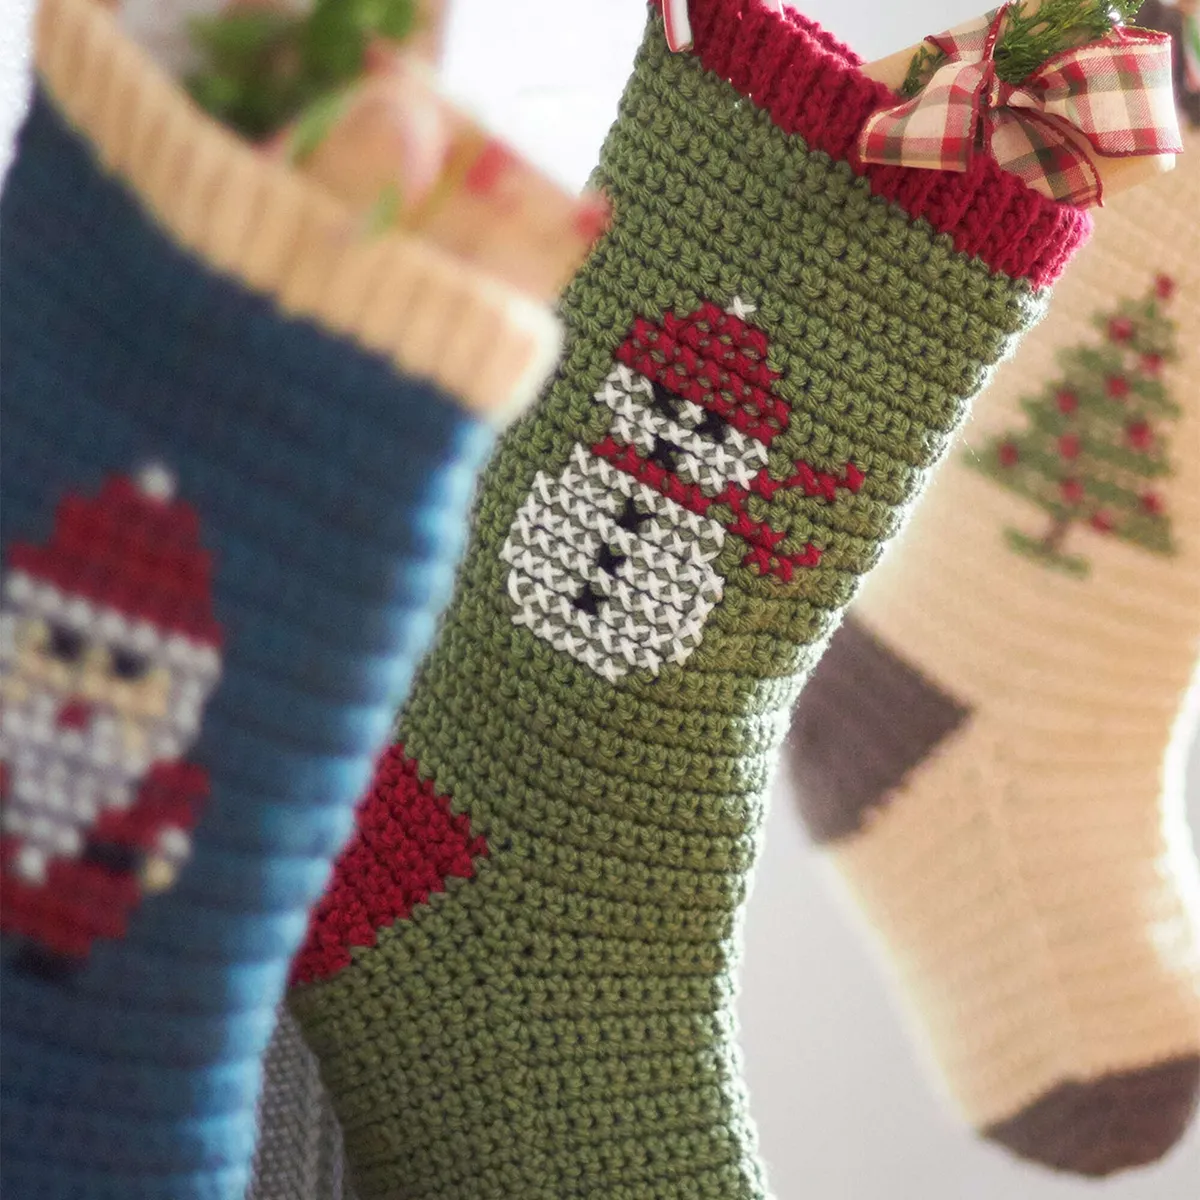 Cross stitch crochet stocking pattern